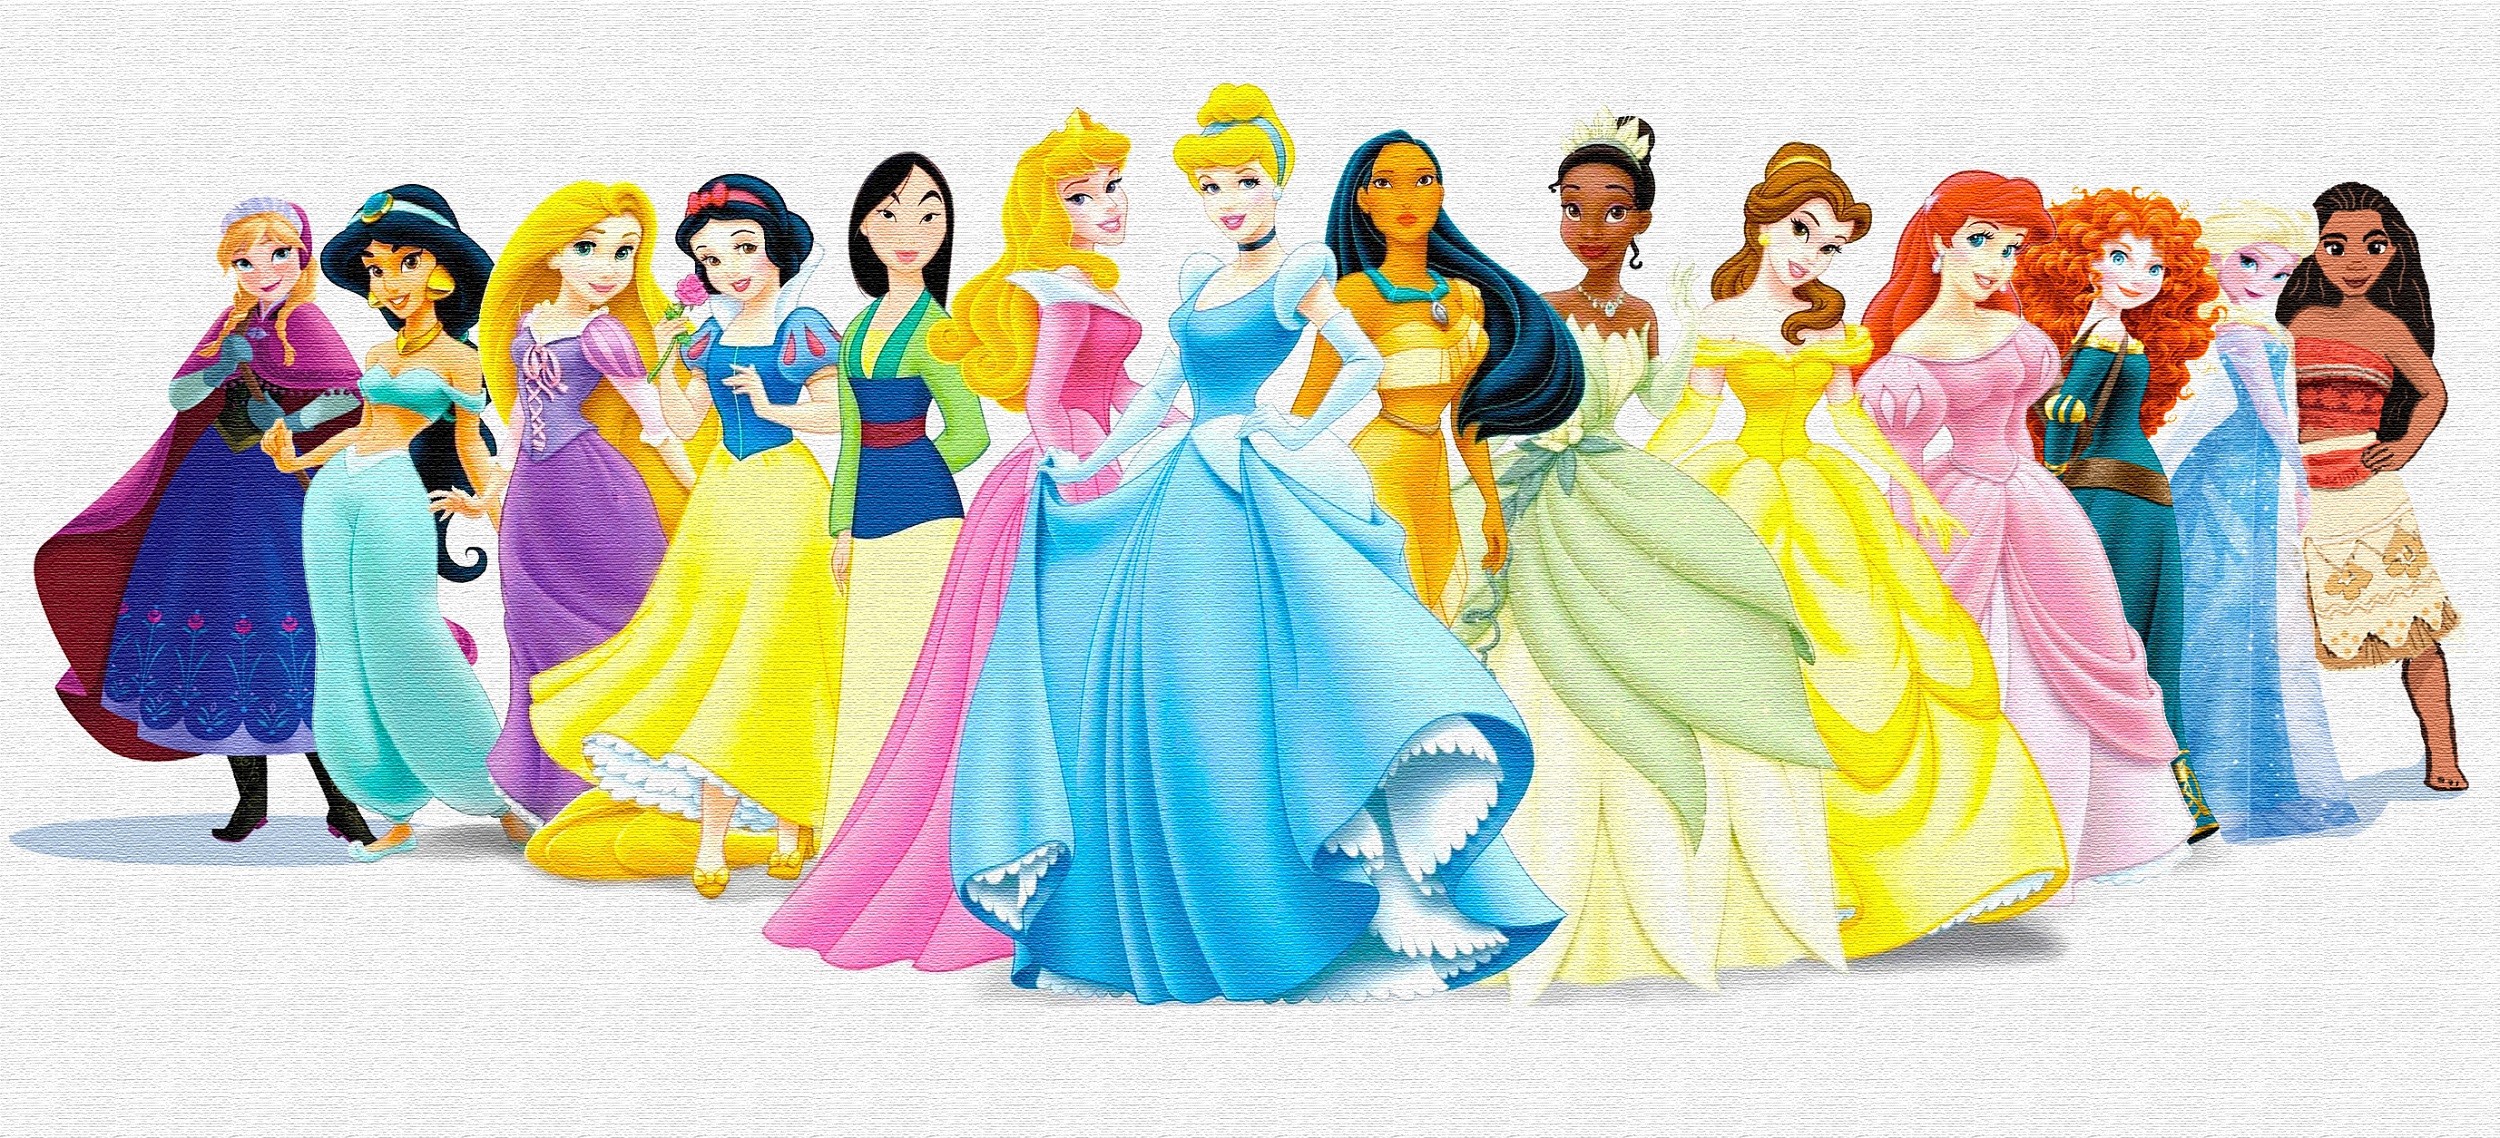 最全迪士尼公主系列头像合集|多人闺蜜头像|情侣头像 - 知乎